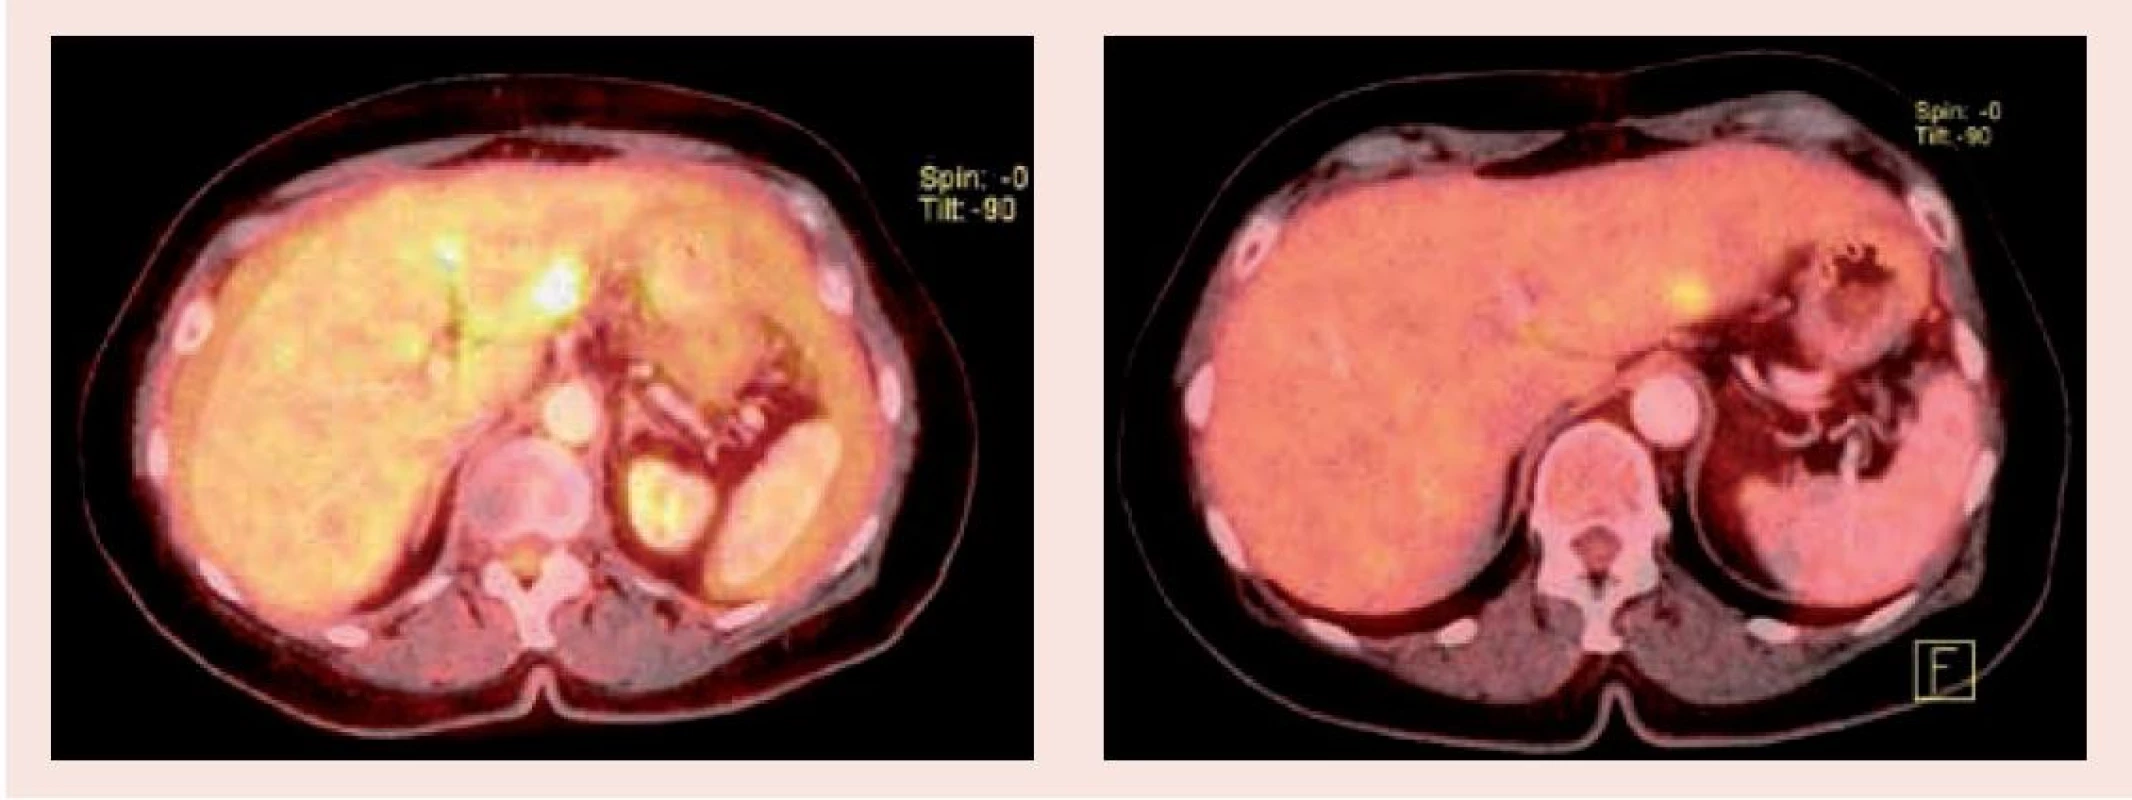 PET/CT vyšetření před zahájením léčby (1.1) a po 3 měsících (1.2) – oblast jater